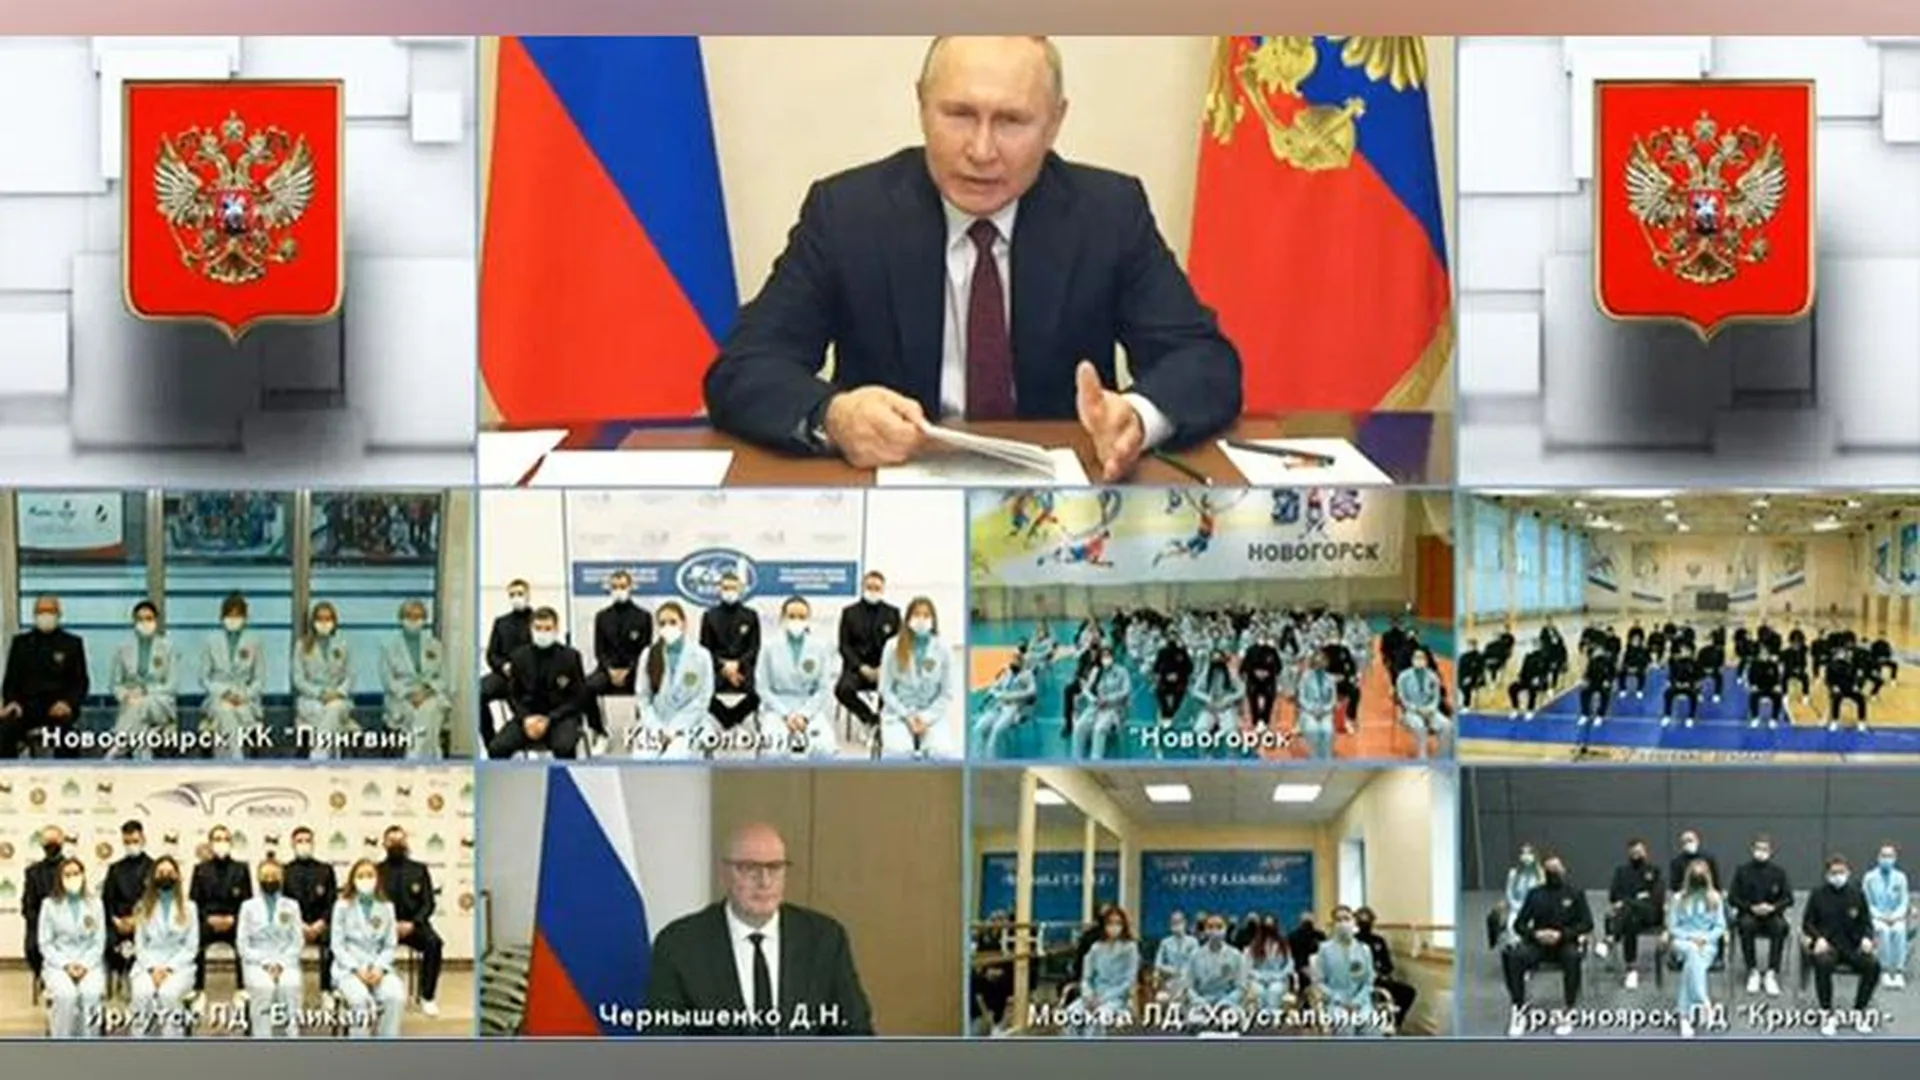 Олимпийцы вышли на связь с Путиным из Конькобежного центра в Коломне 